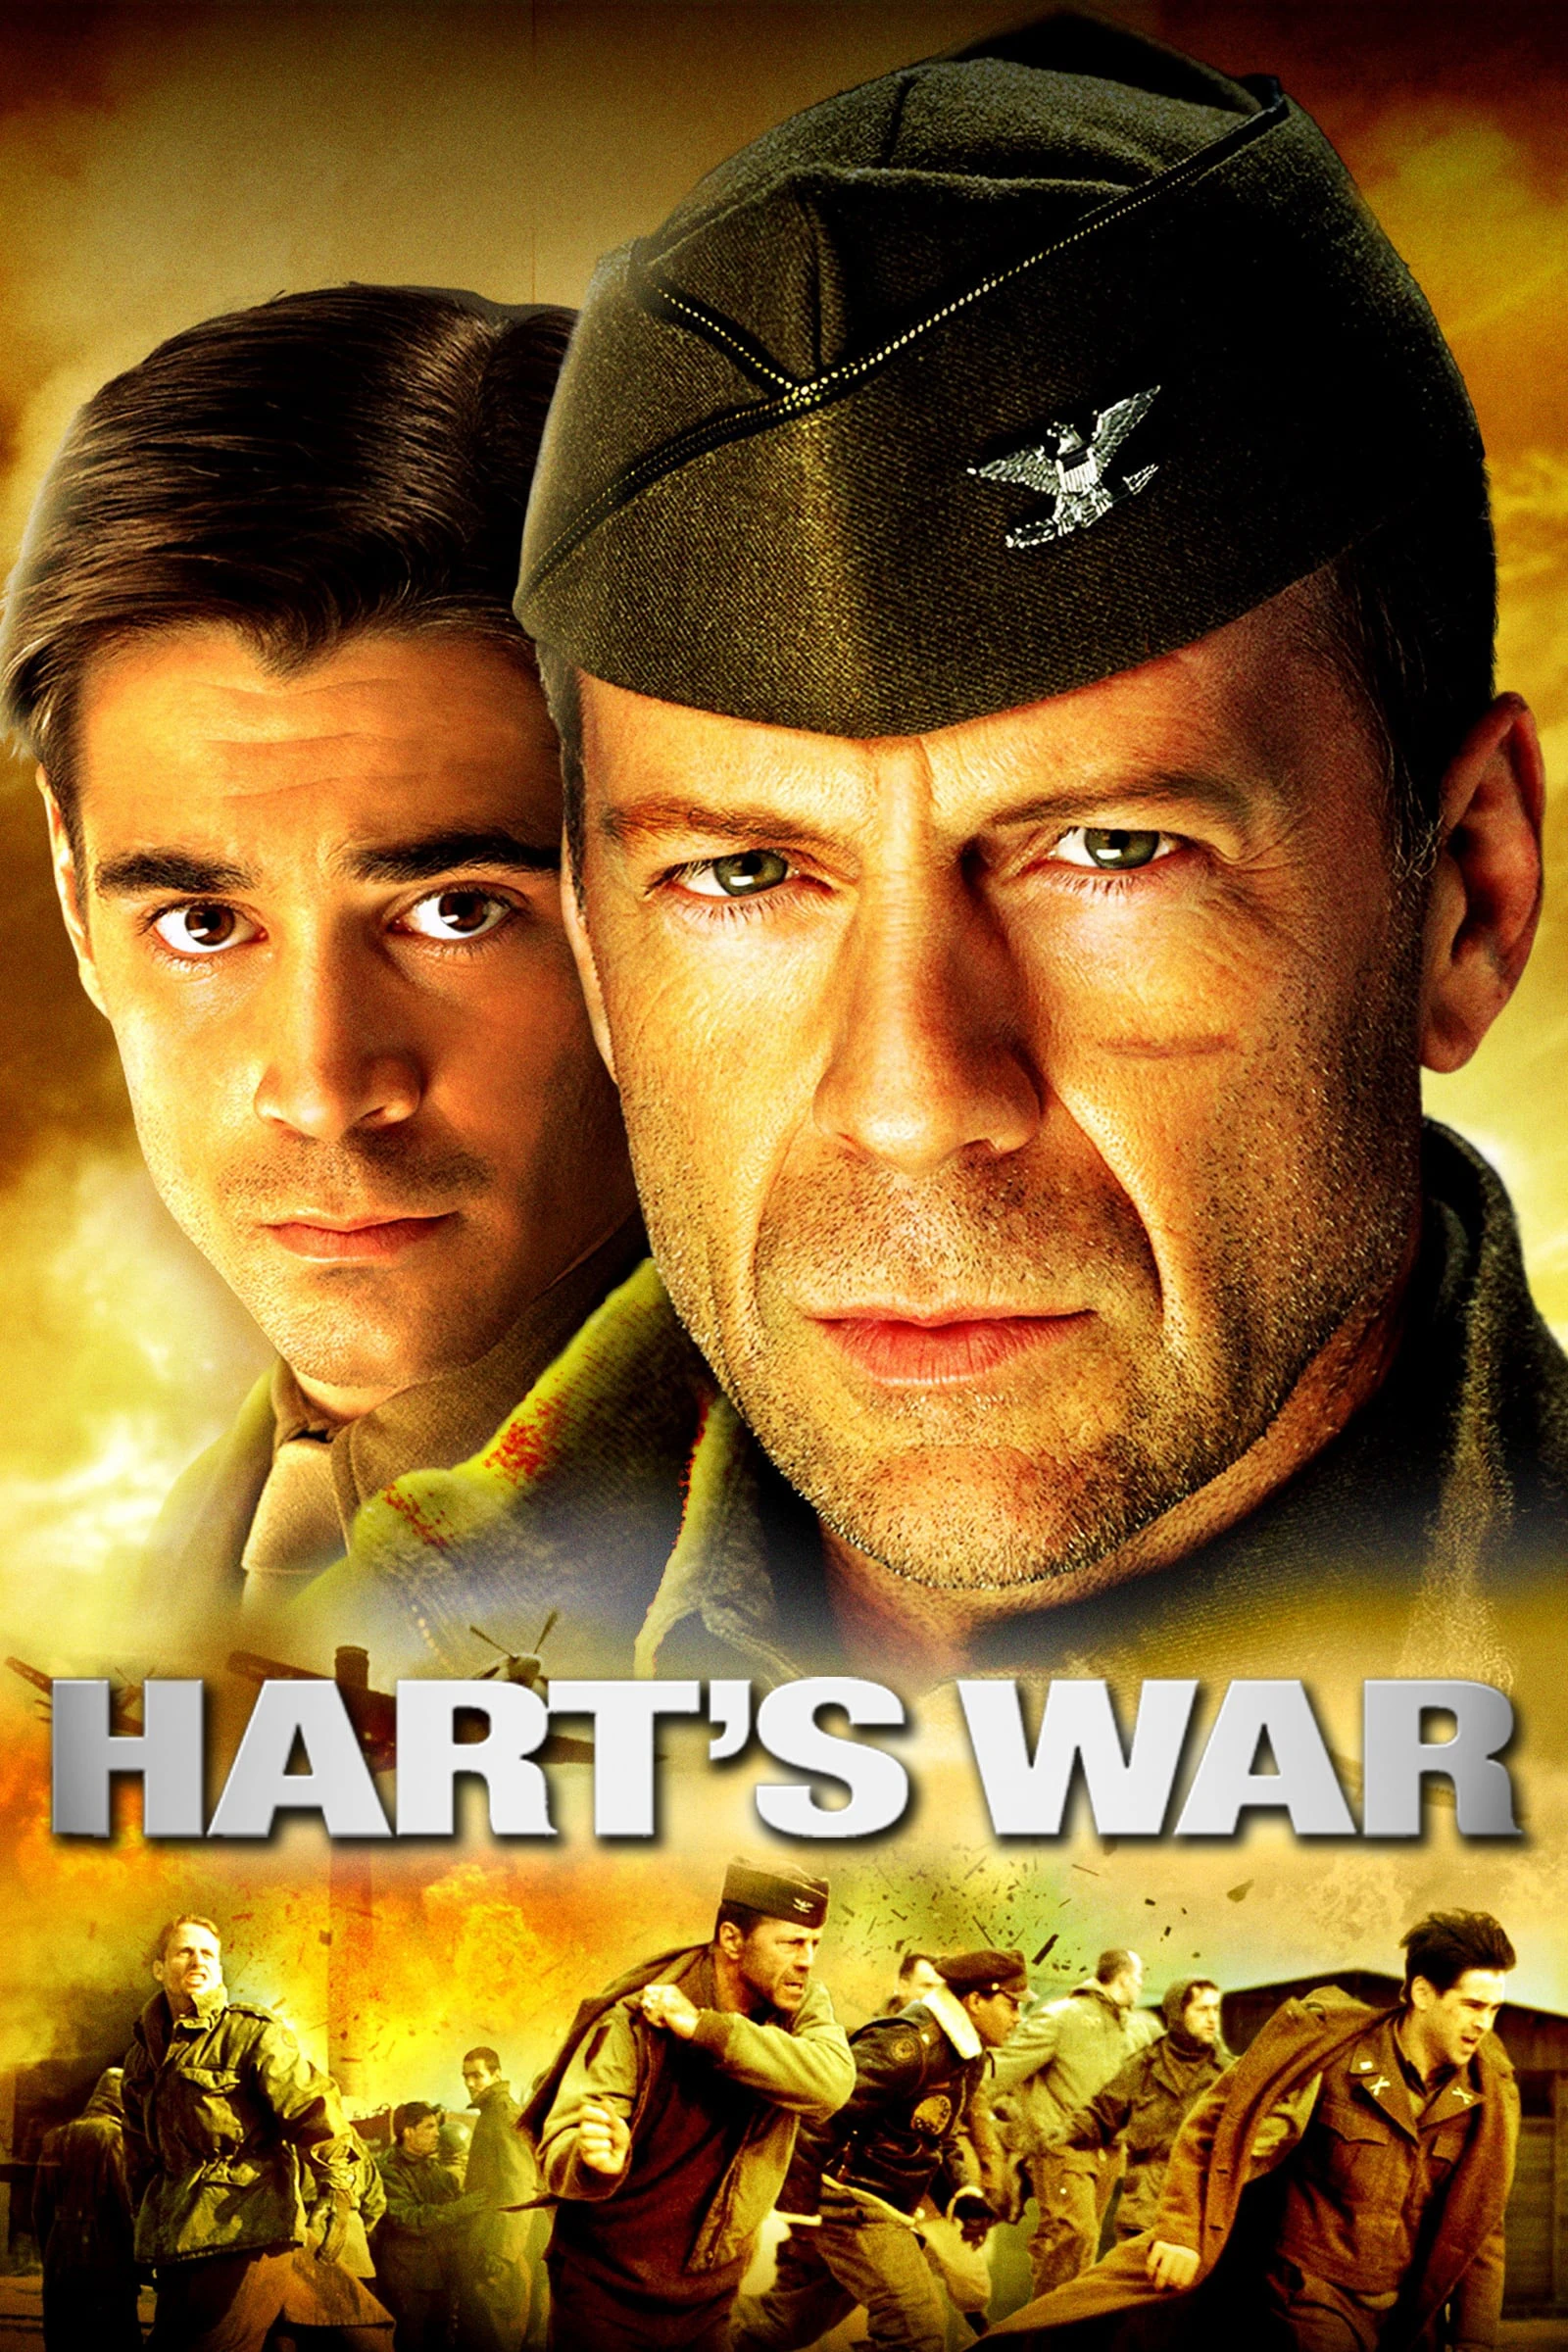 Hart's War | Hart's War (2002)